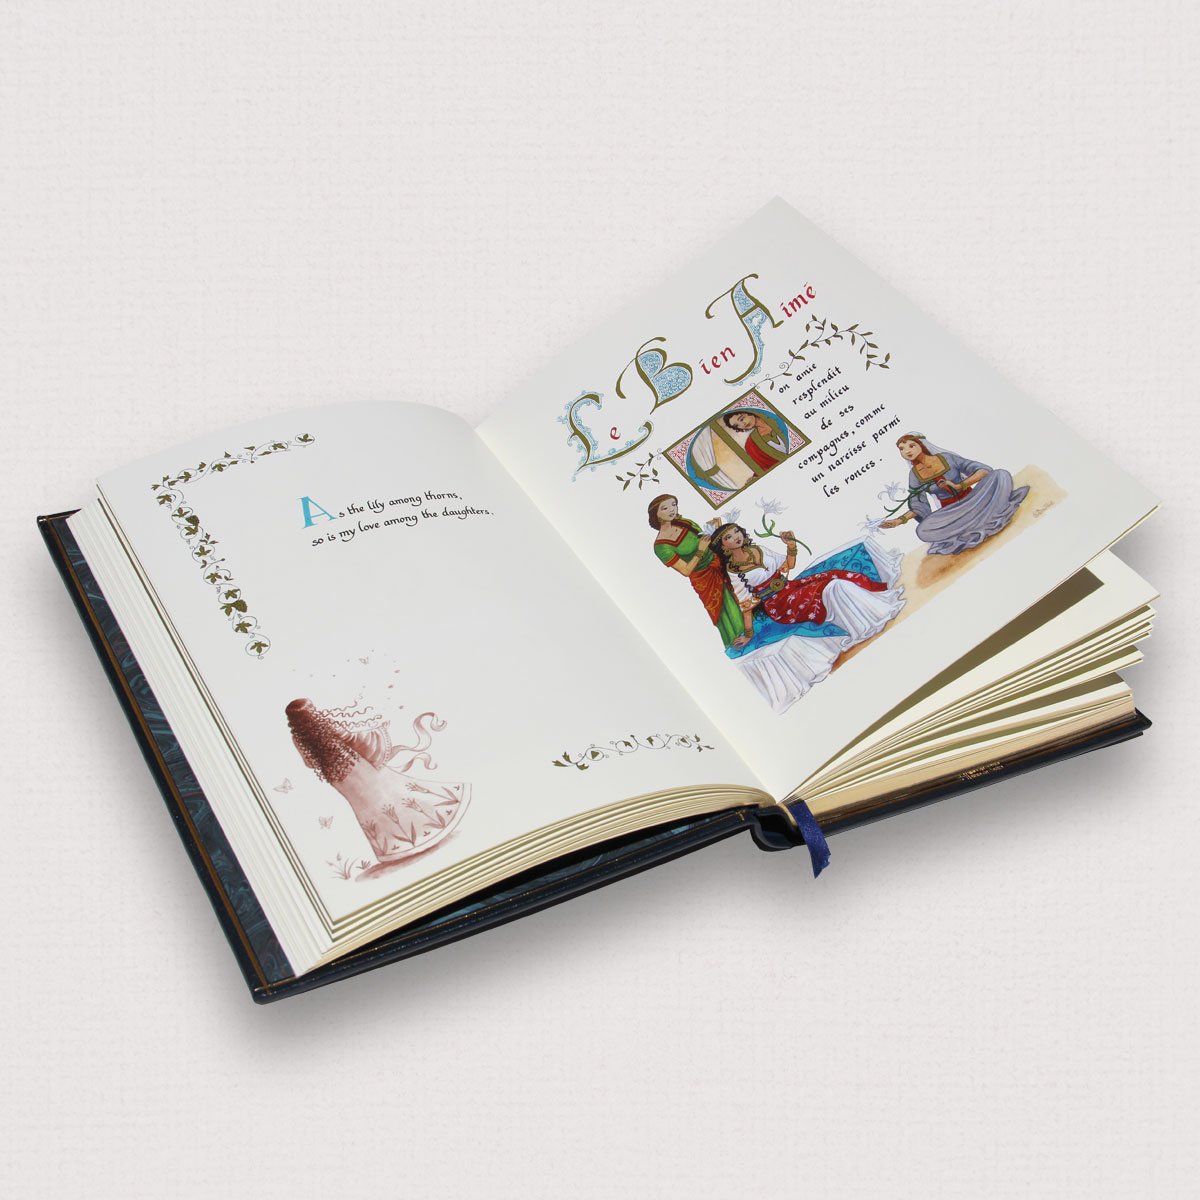 Livre ouvert Le Cantique des Cantiques, aperçu des enluminures et calligraphie des pages intérieures exemplaire luxe Editions Larroque